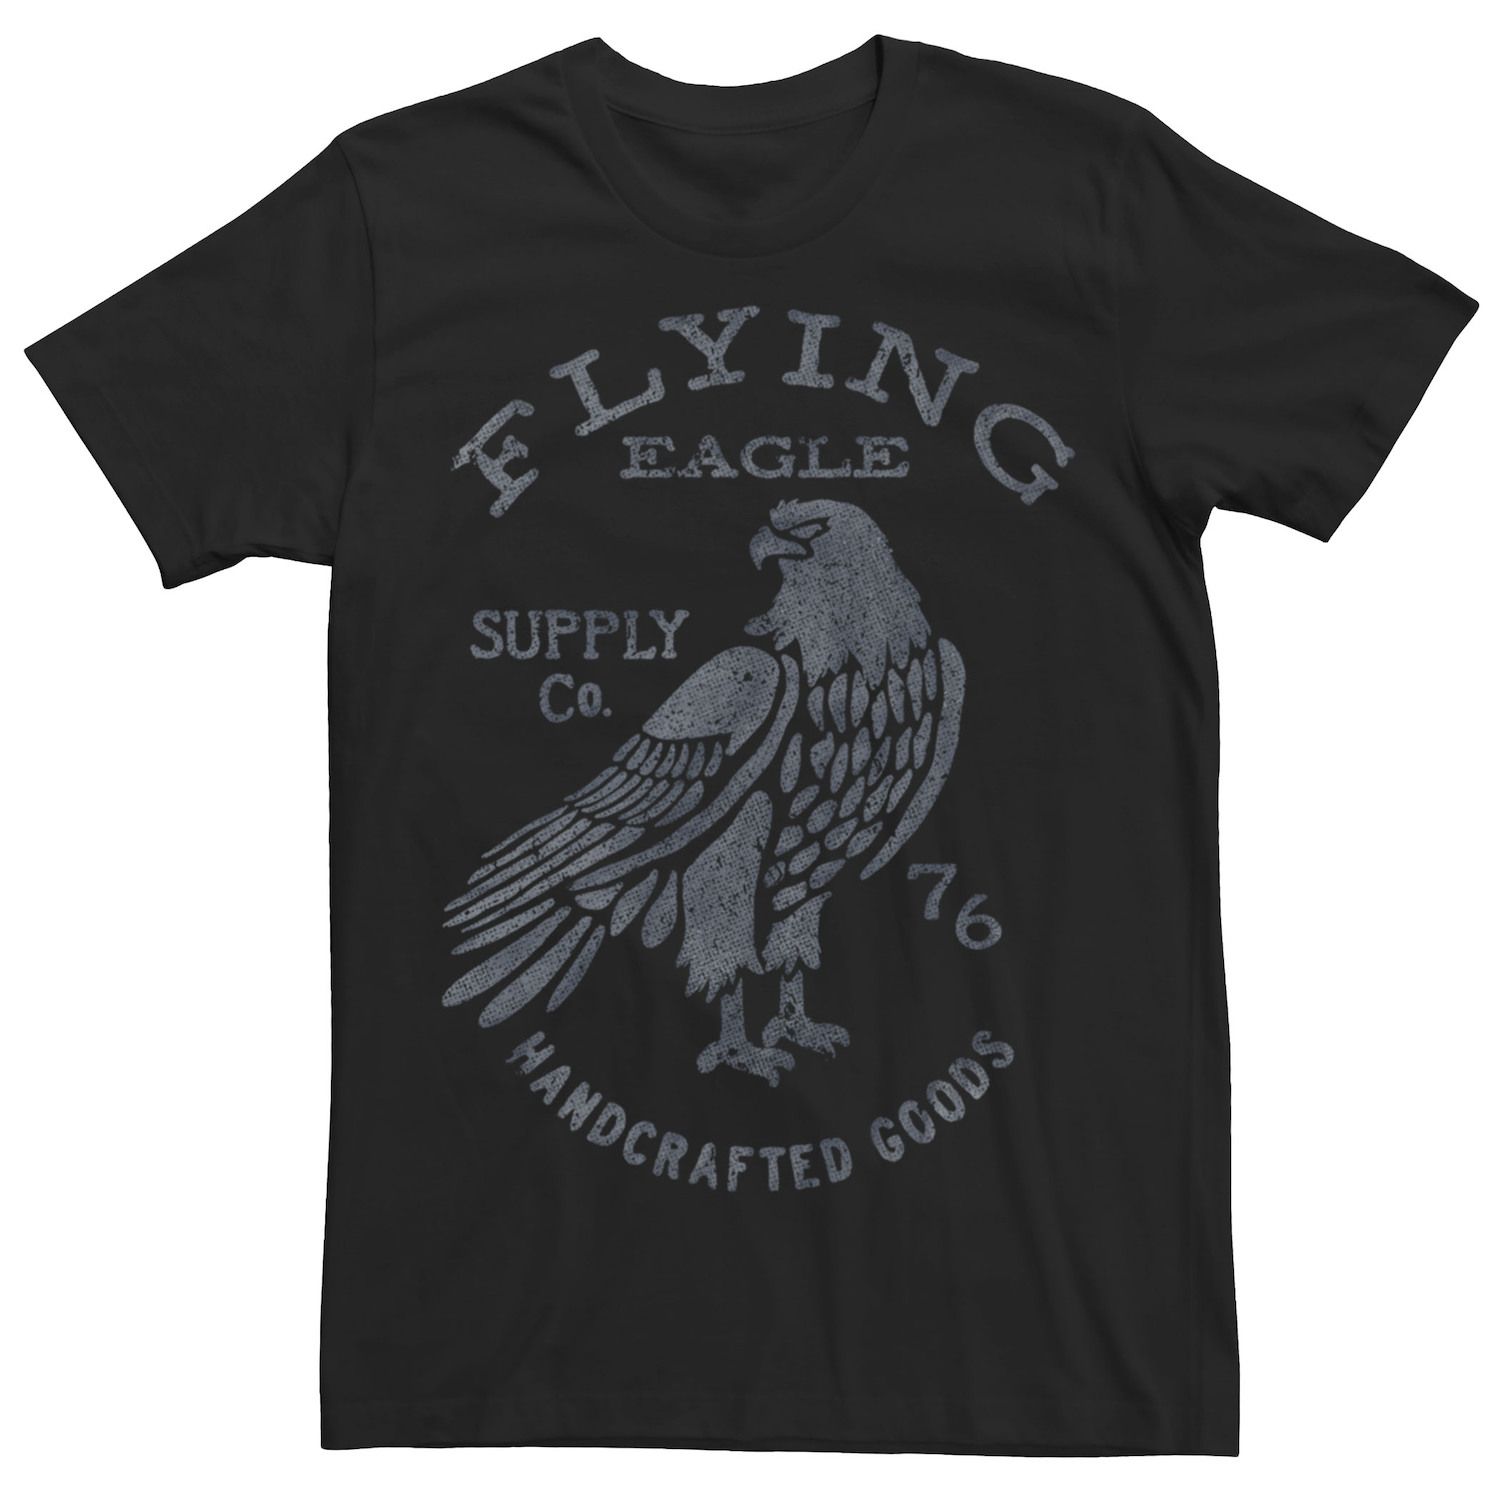 Мужская футболка с этикеткой Flying Eagle Supply Co. Licensed Character